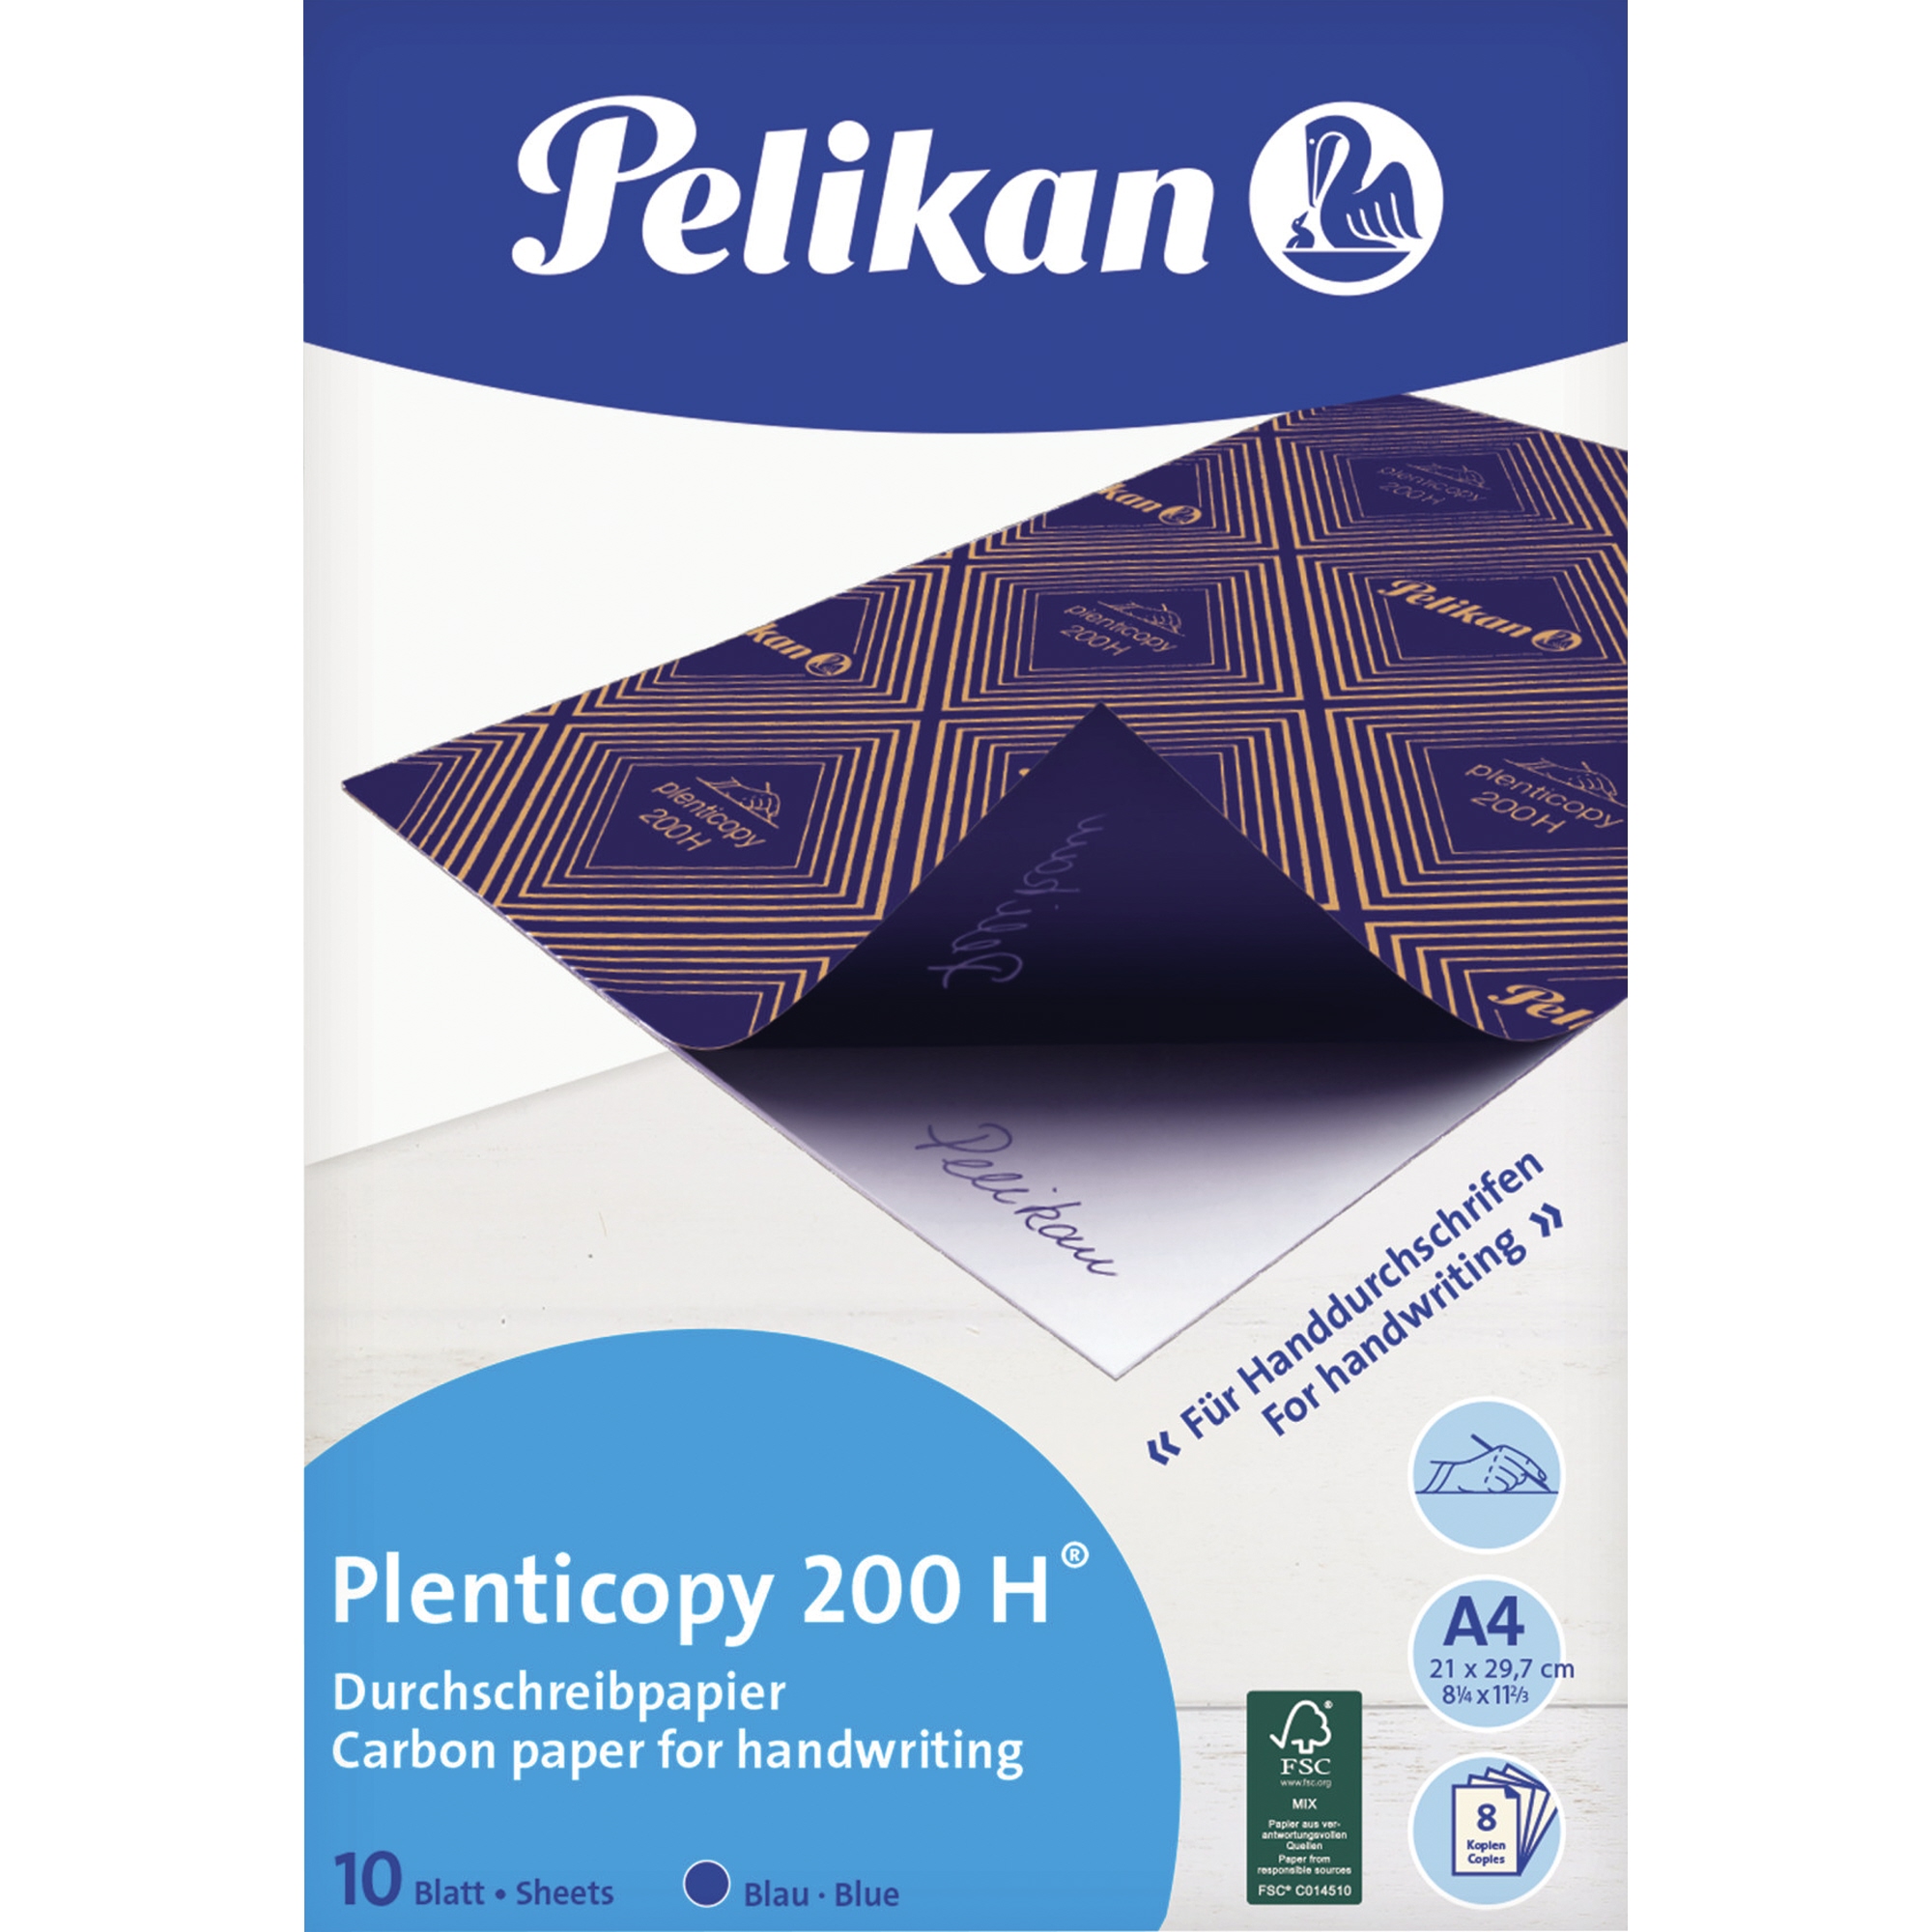 Pelikan Handdurchschreibepapier plenticopy 200 H 10 Blt.